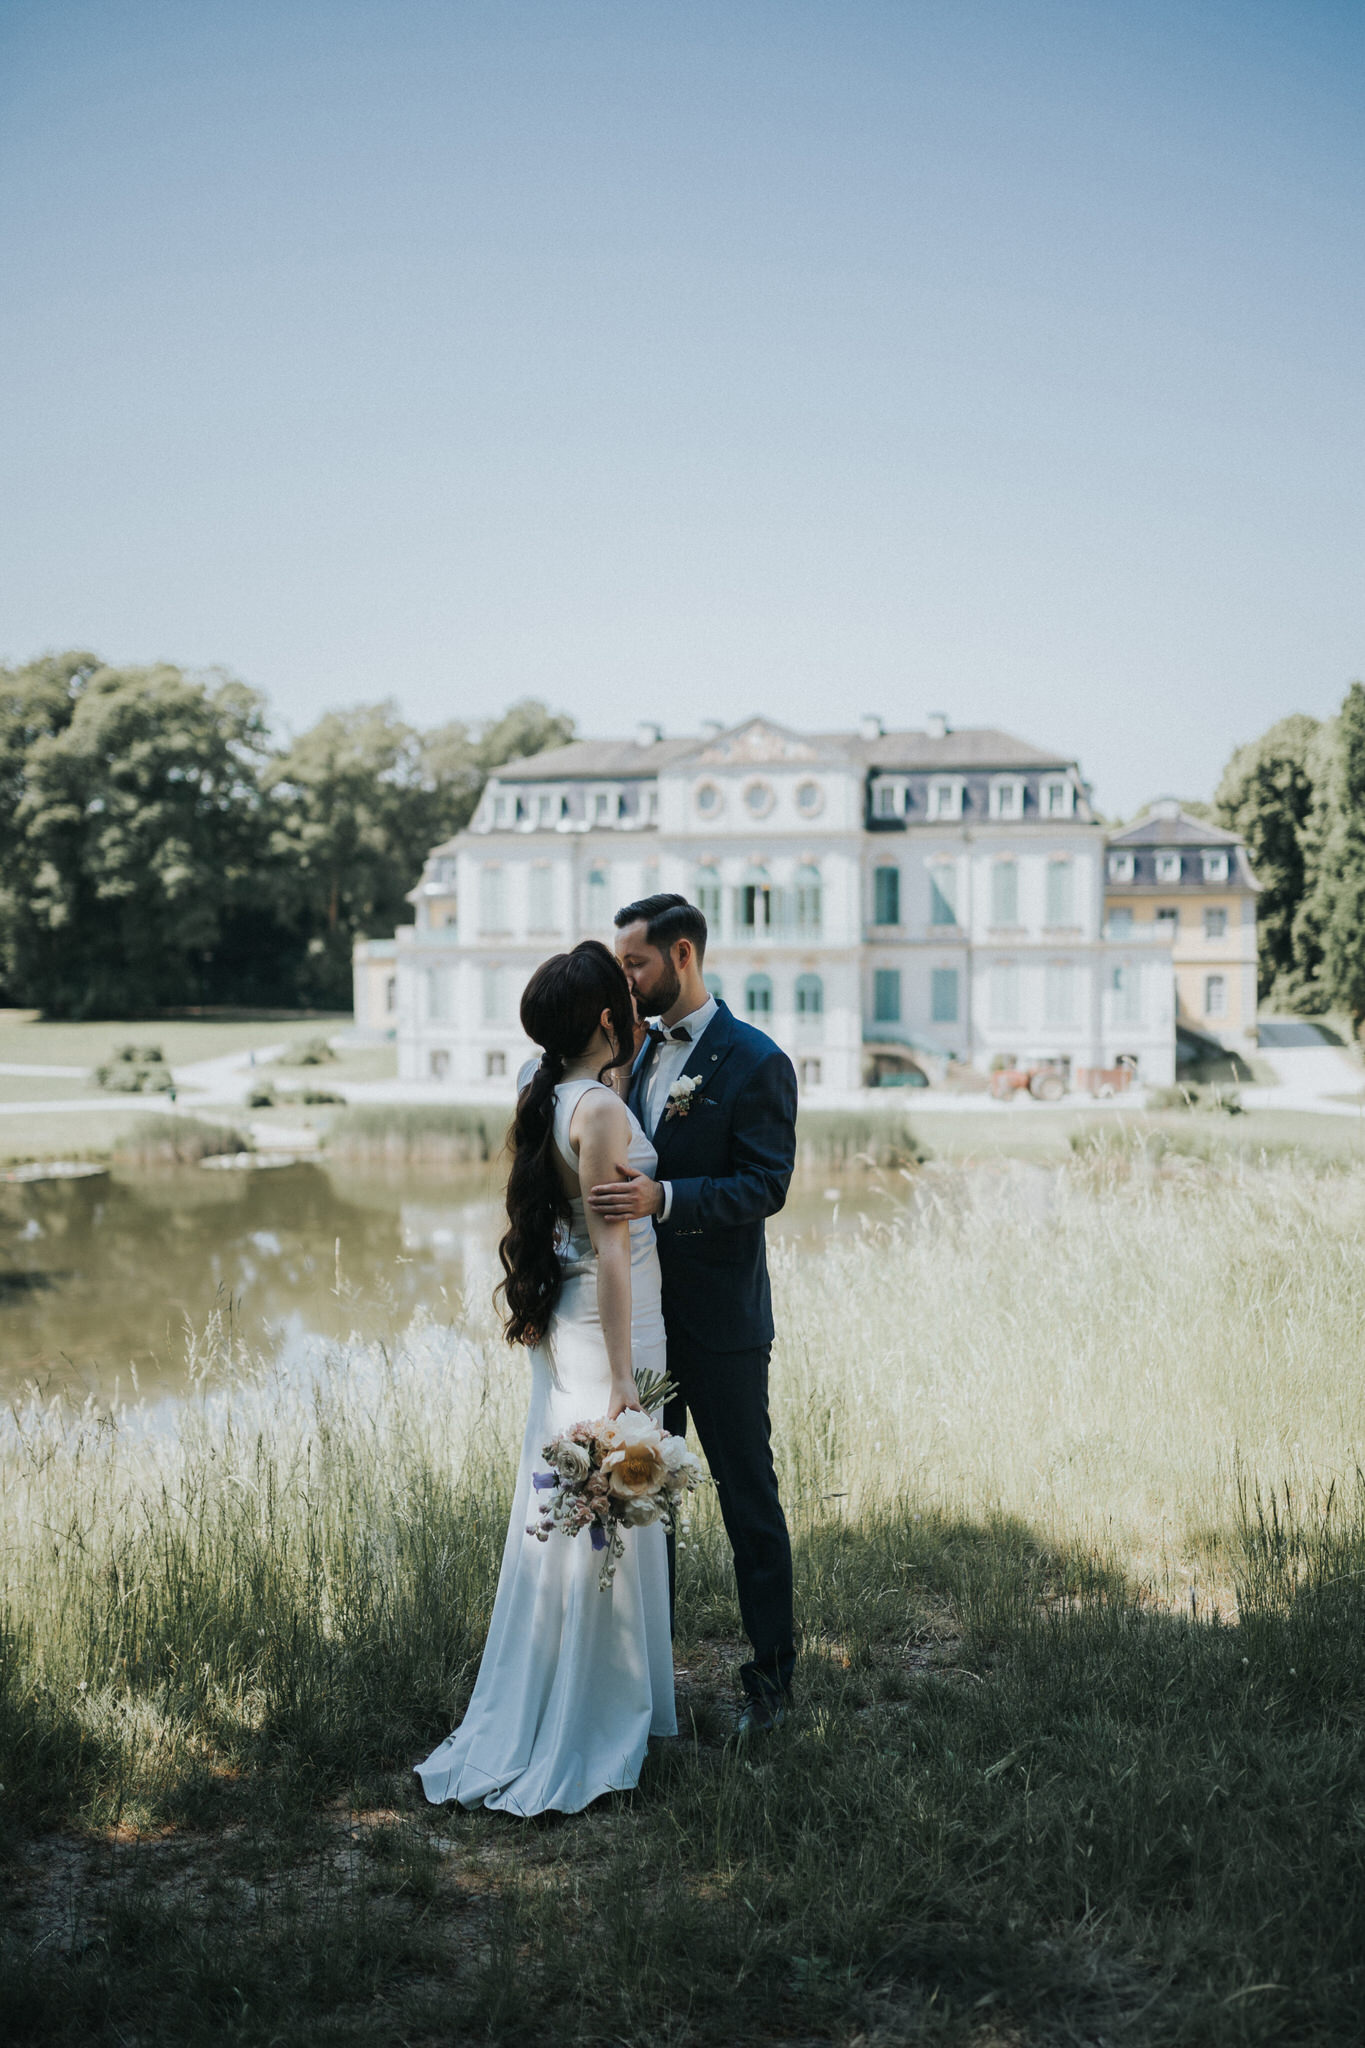 Magischer Moment der standesamtlichen Trauung in Schloss Wilhelmsthal – Das Brautpaar erlebt einen unvergesslichen Tag, umrahmt von historischem Glanz und der romantischen Kulisse dieses zauberhaften Ortes.